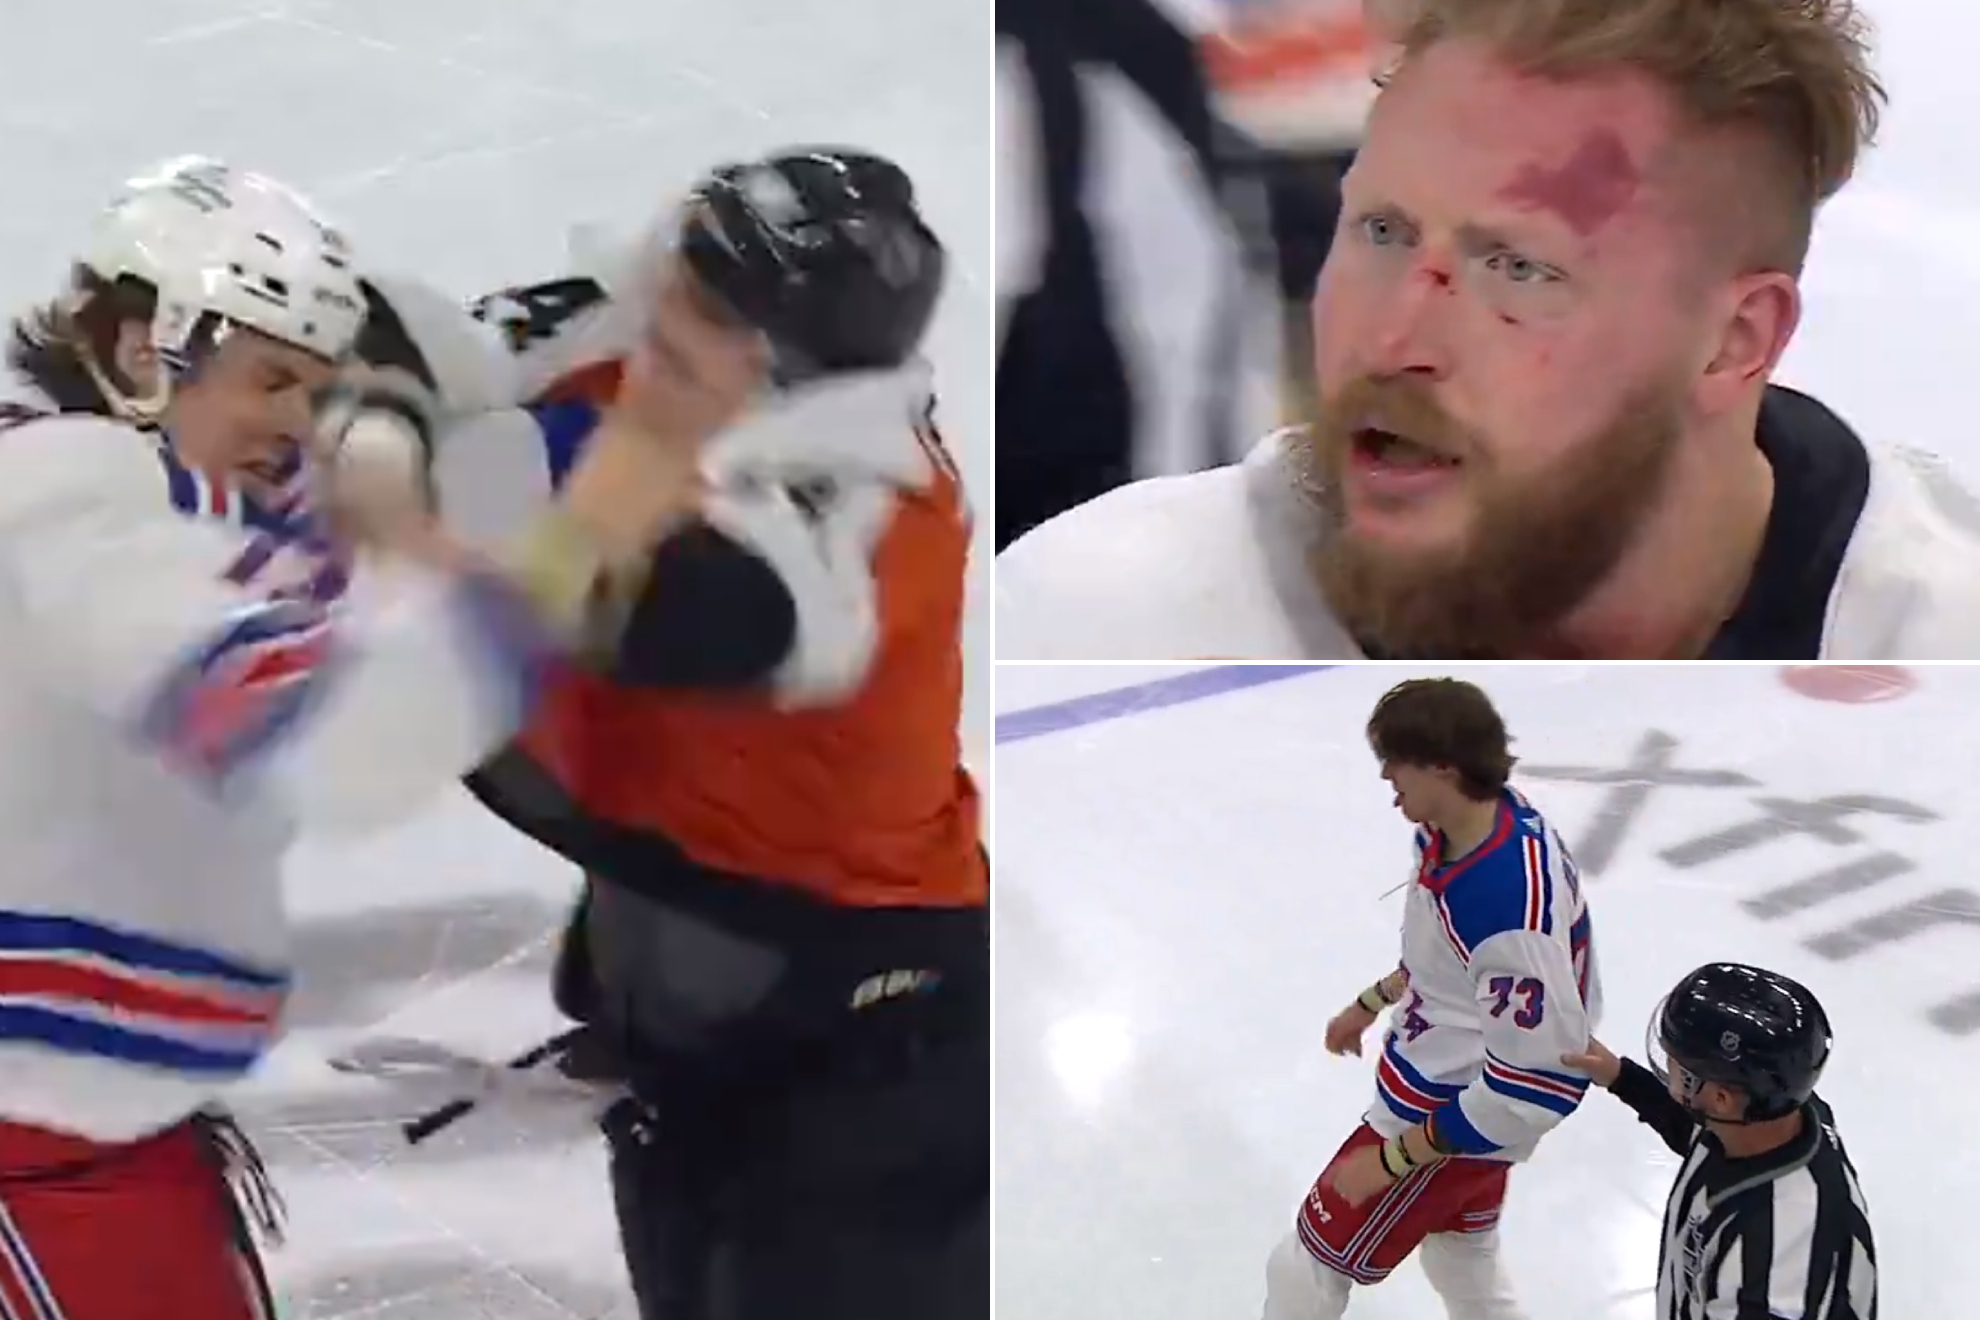 La pelea de la infamia en la NHL: un niño aguanta 60 de golpes de un veterano